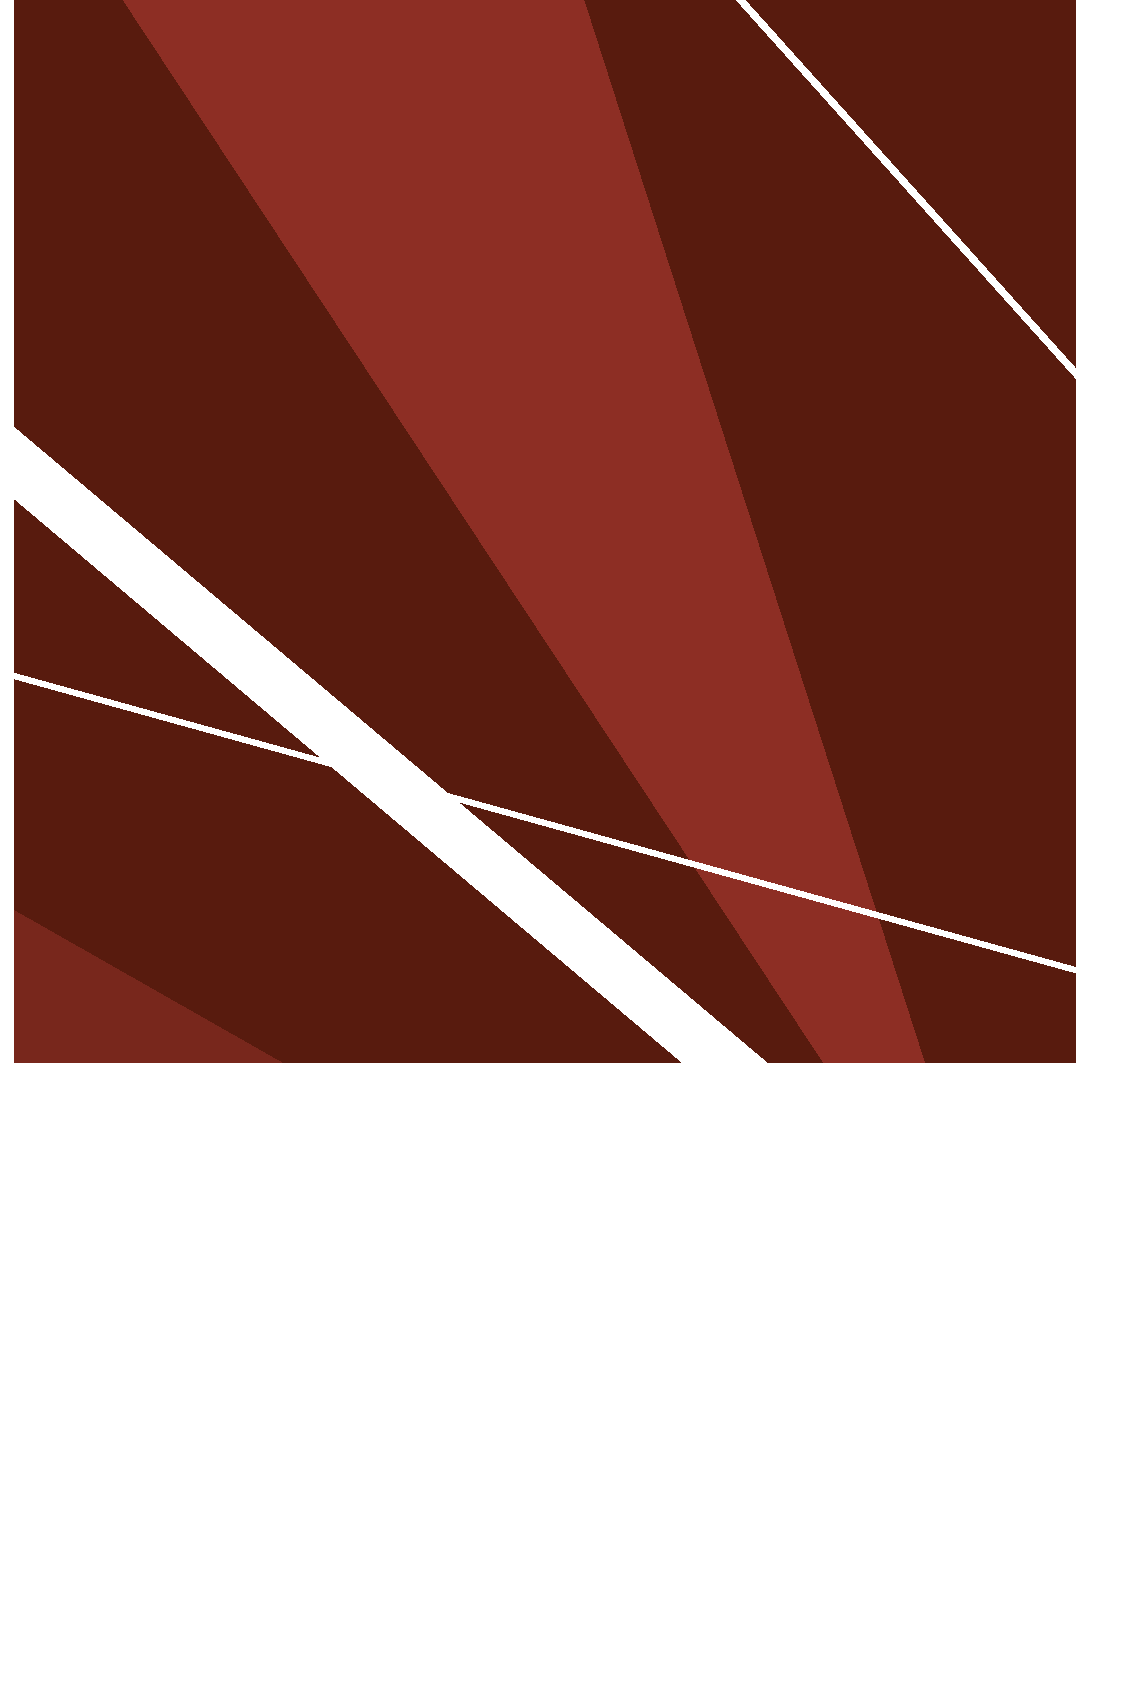 Fasani Celeste